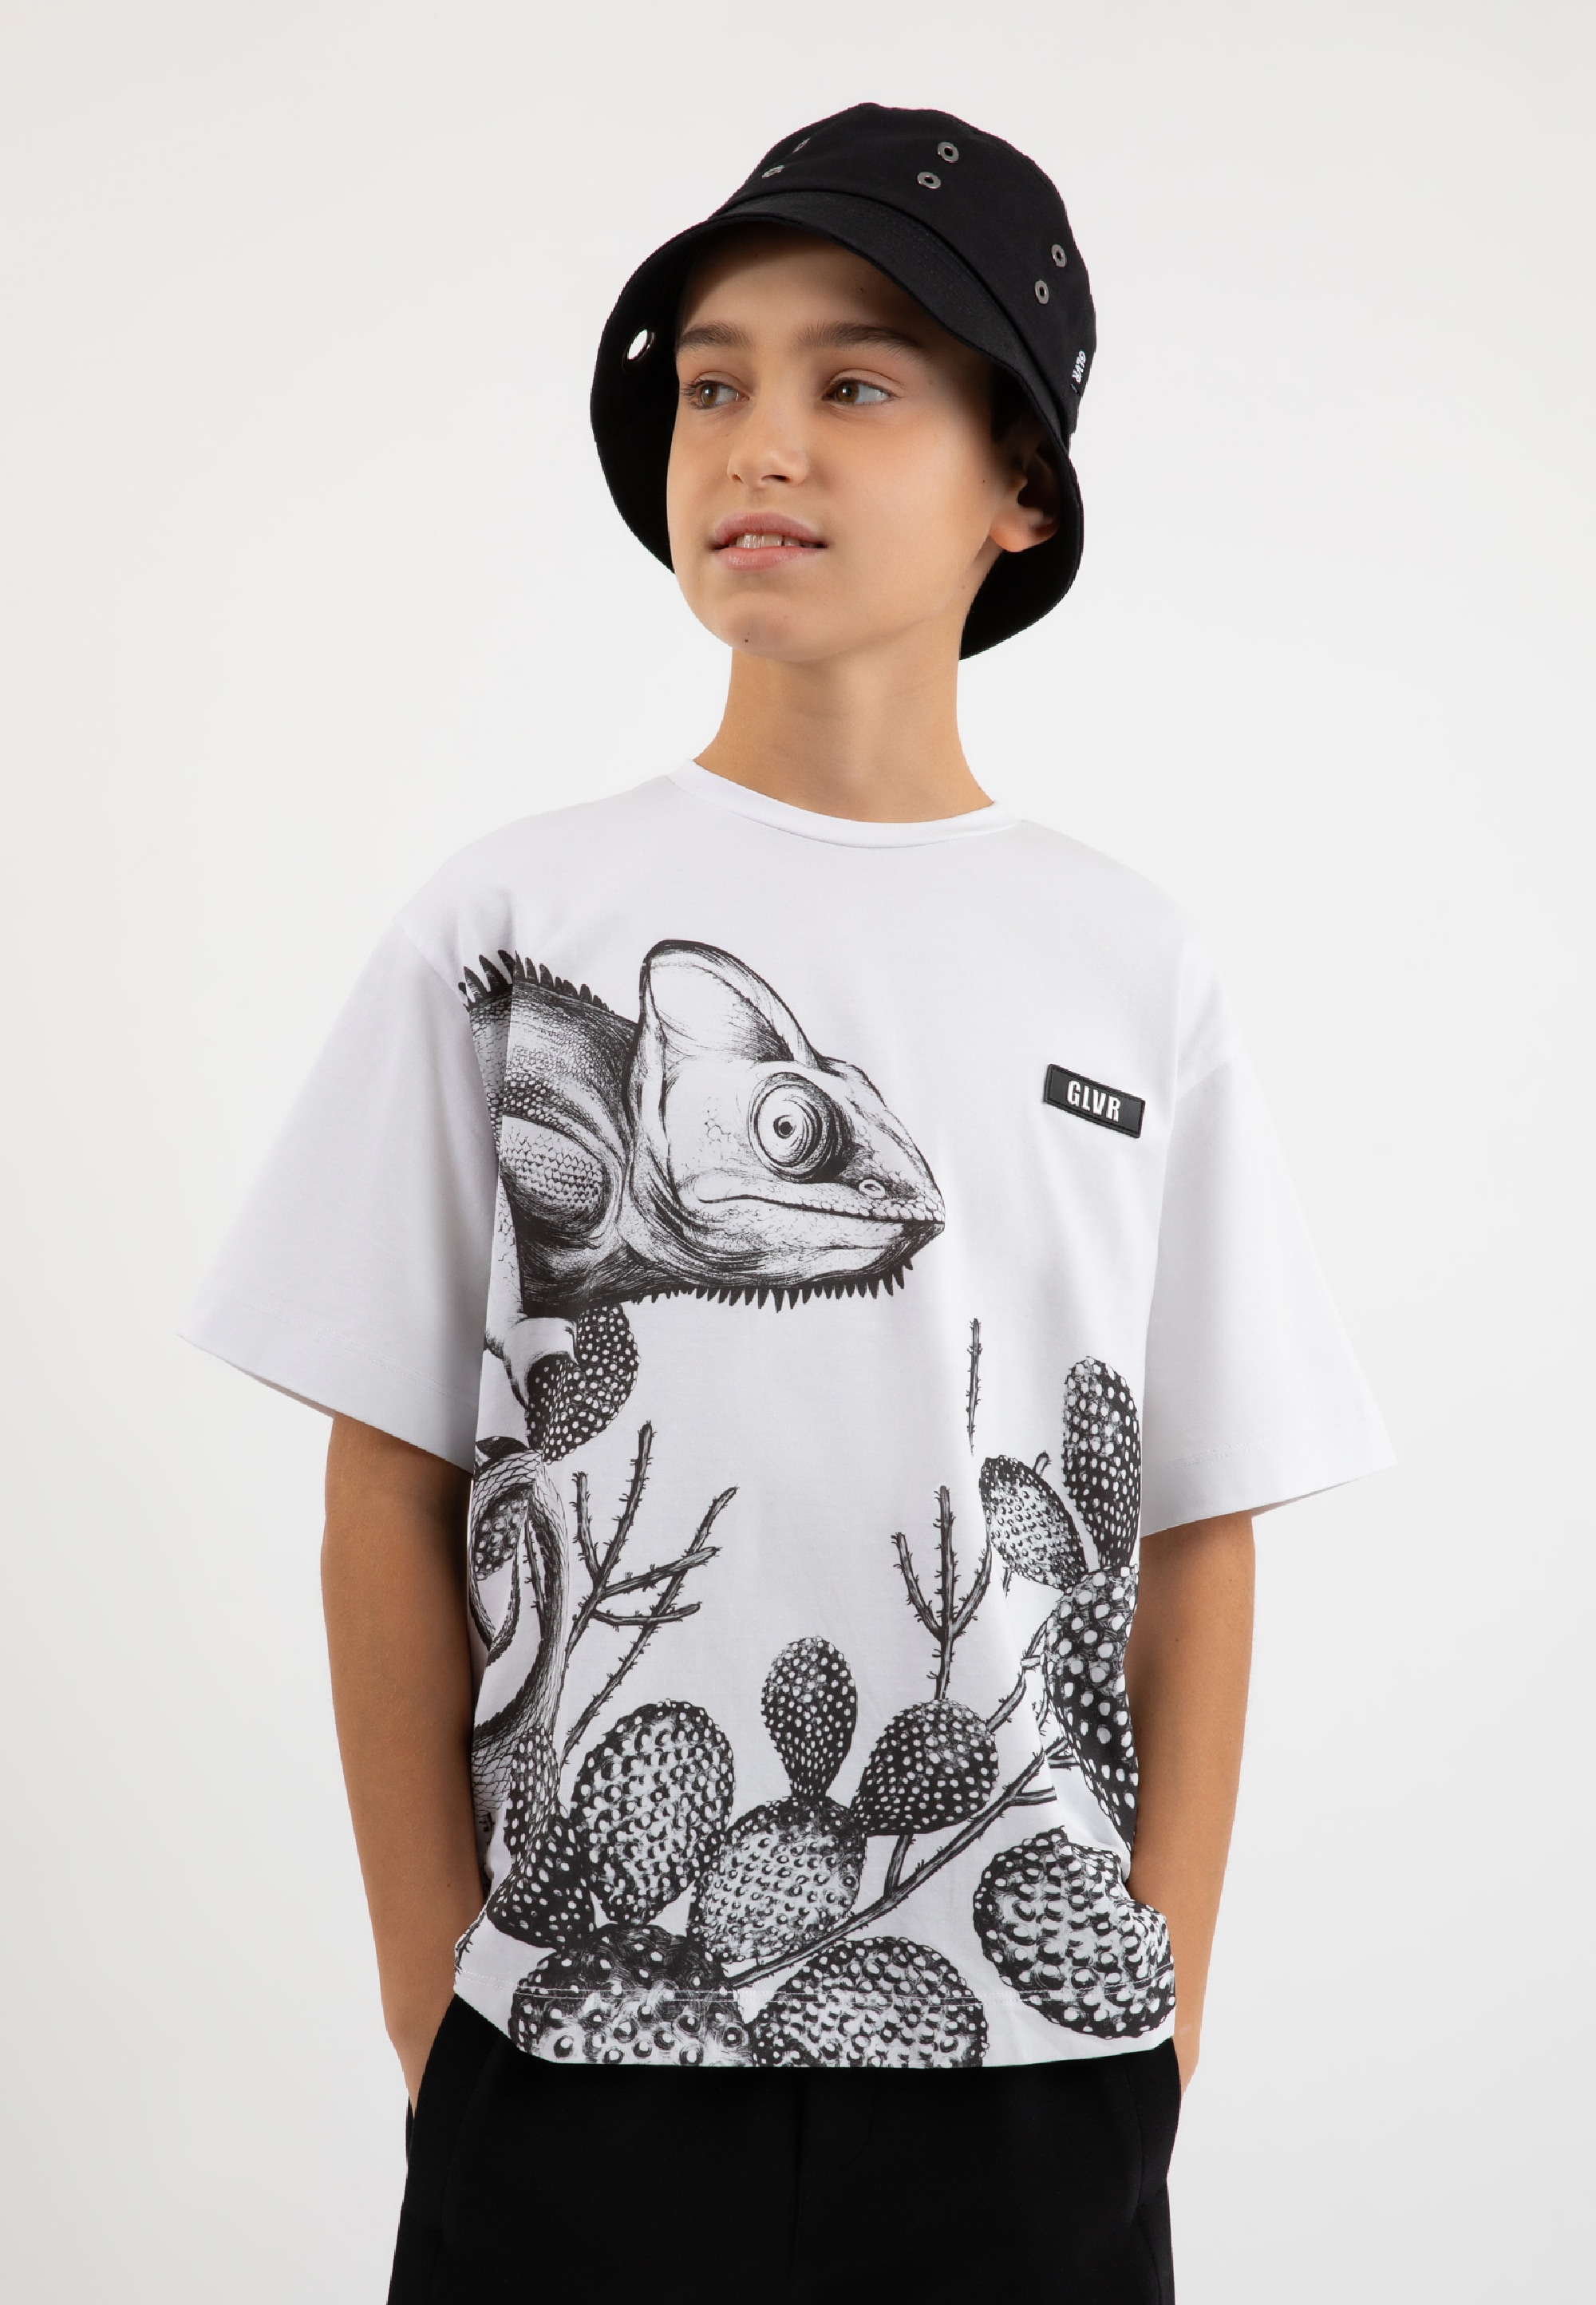 Gulliver T-Shirt, mit coolem Frontprint